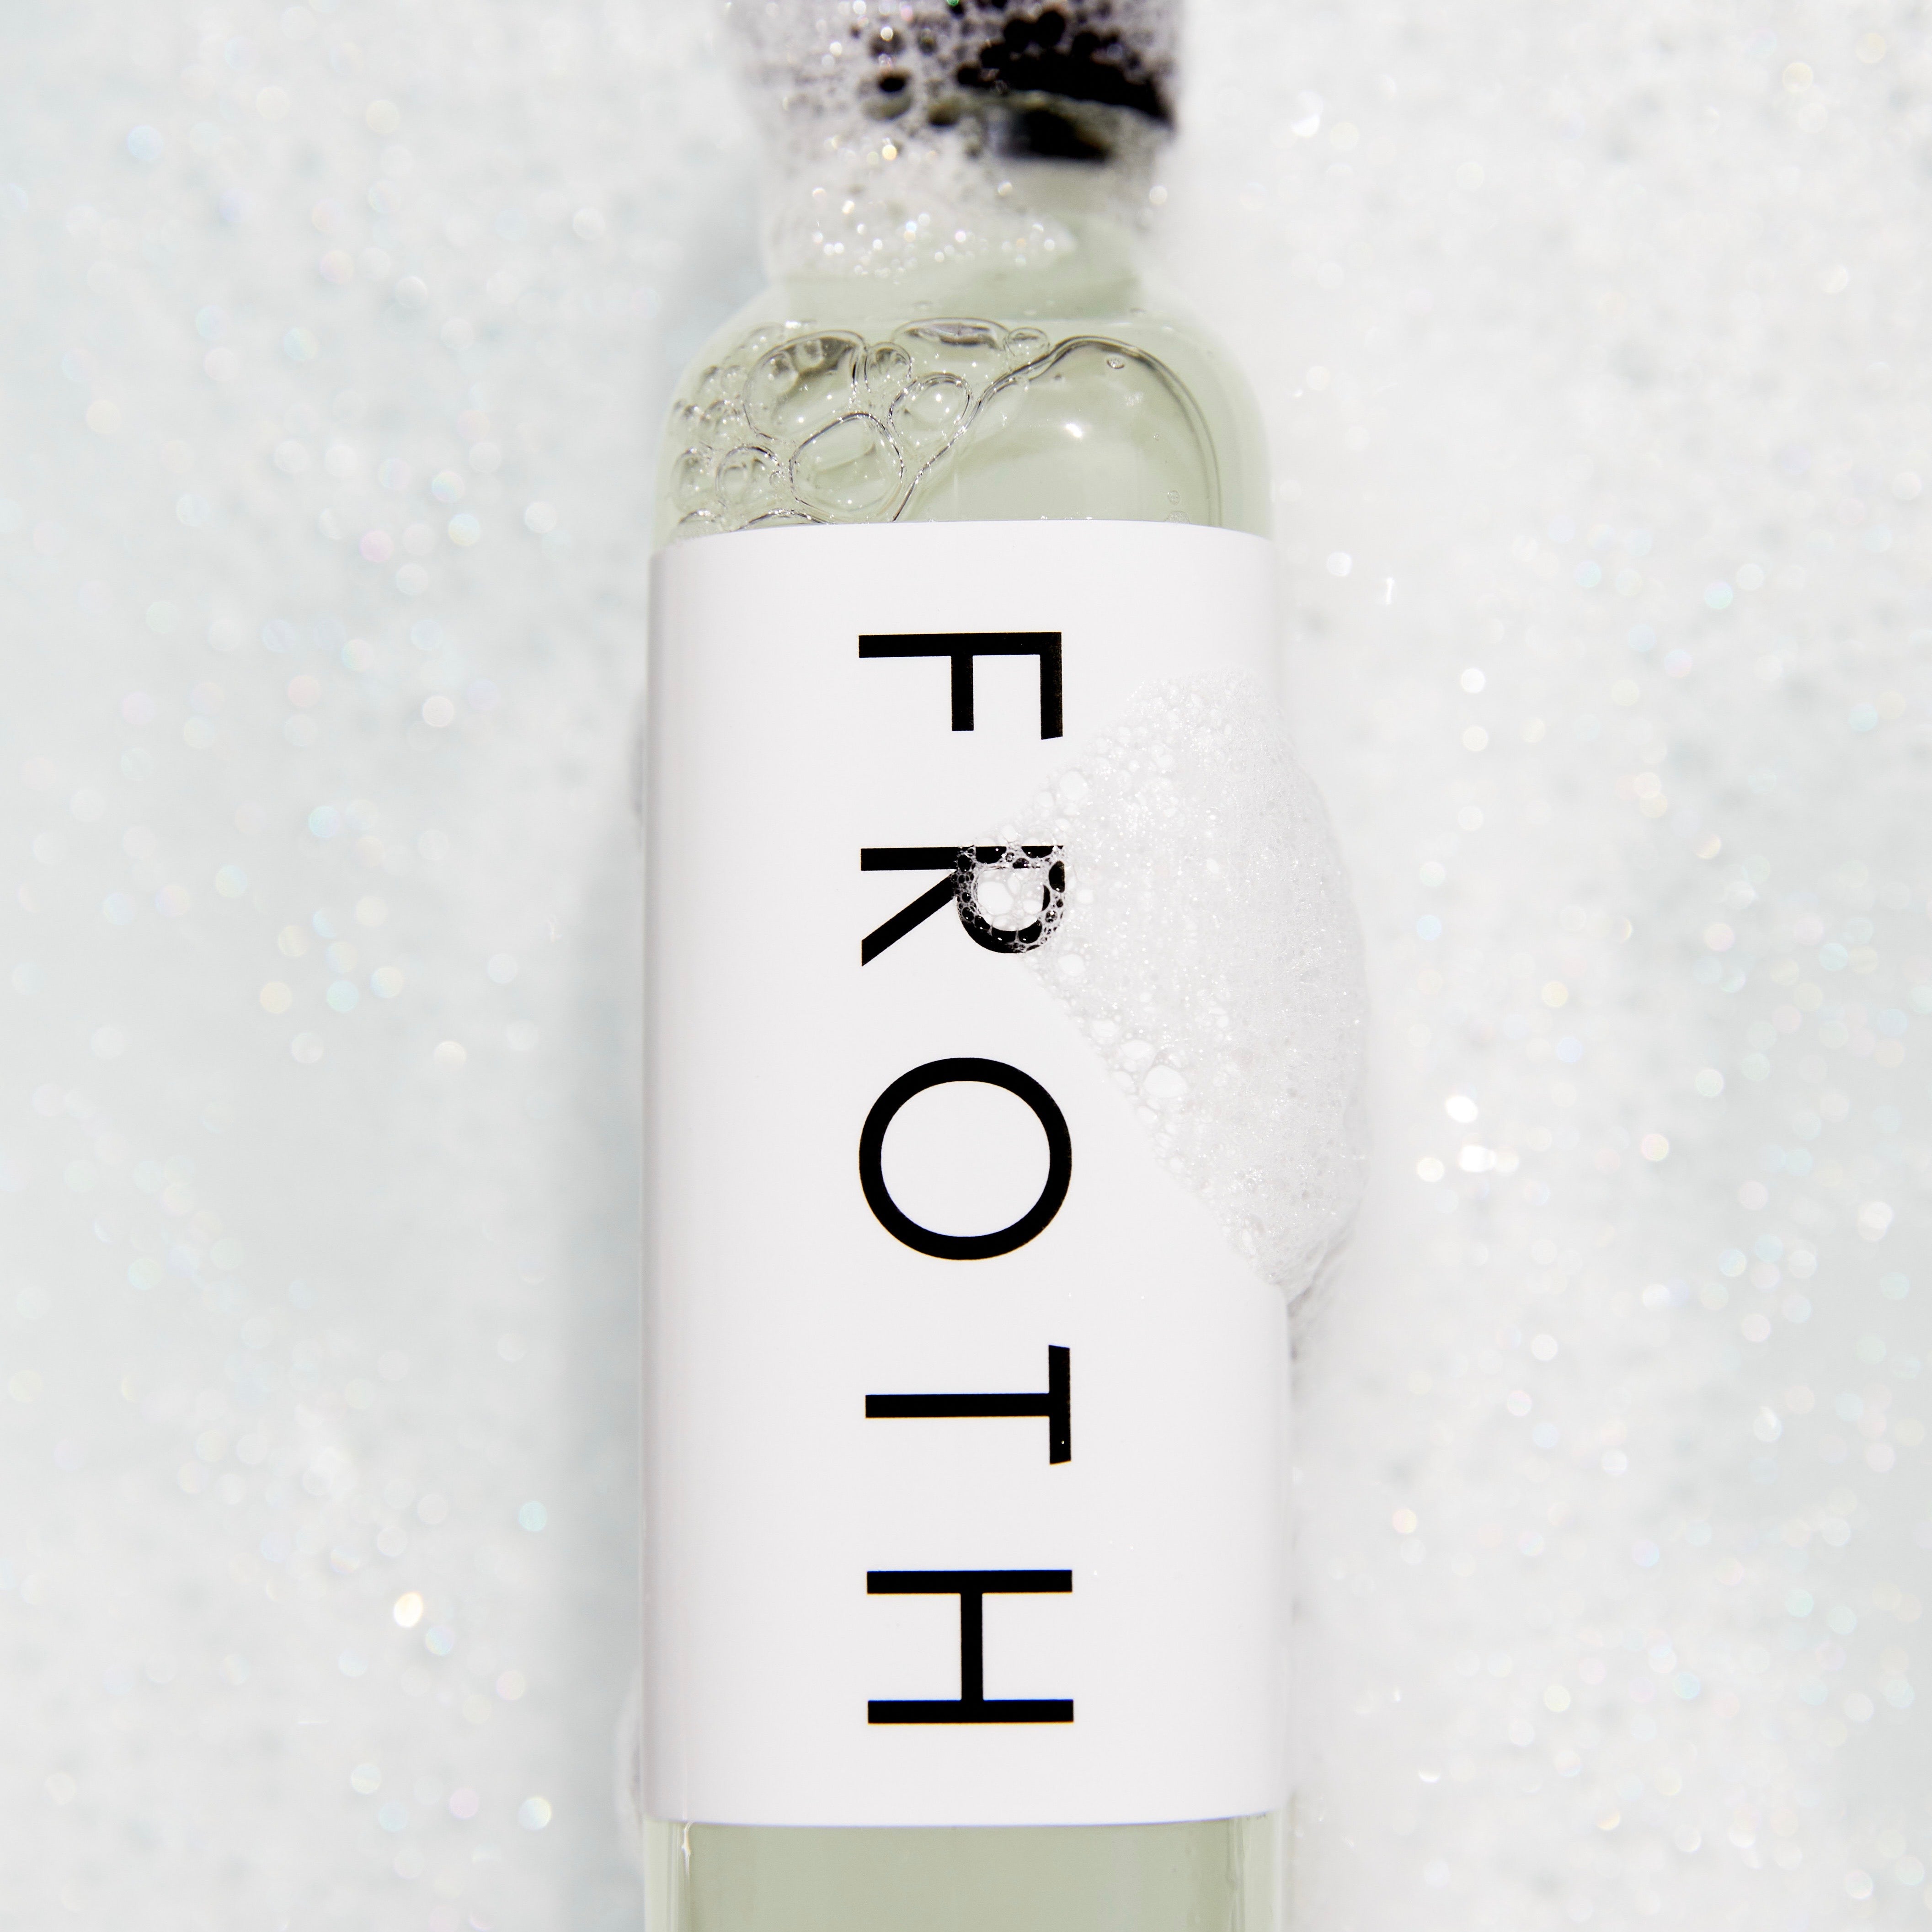 Bath Froth